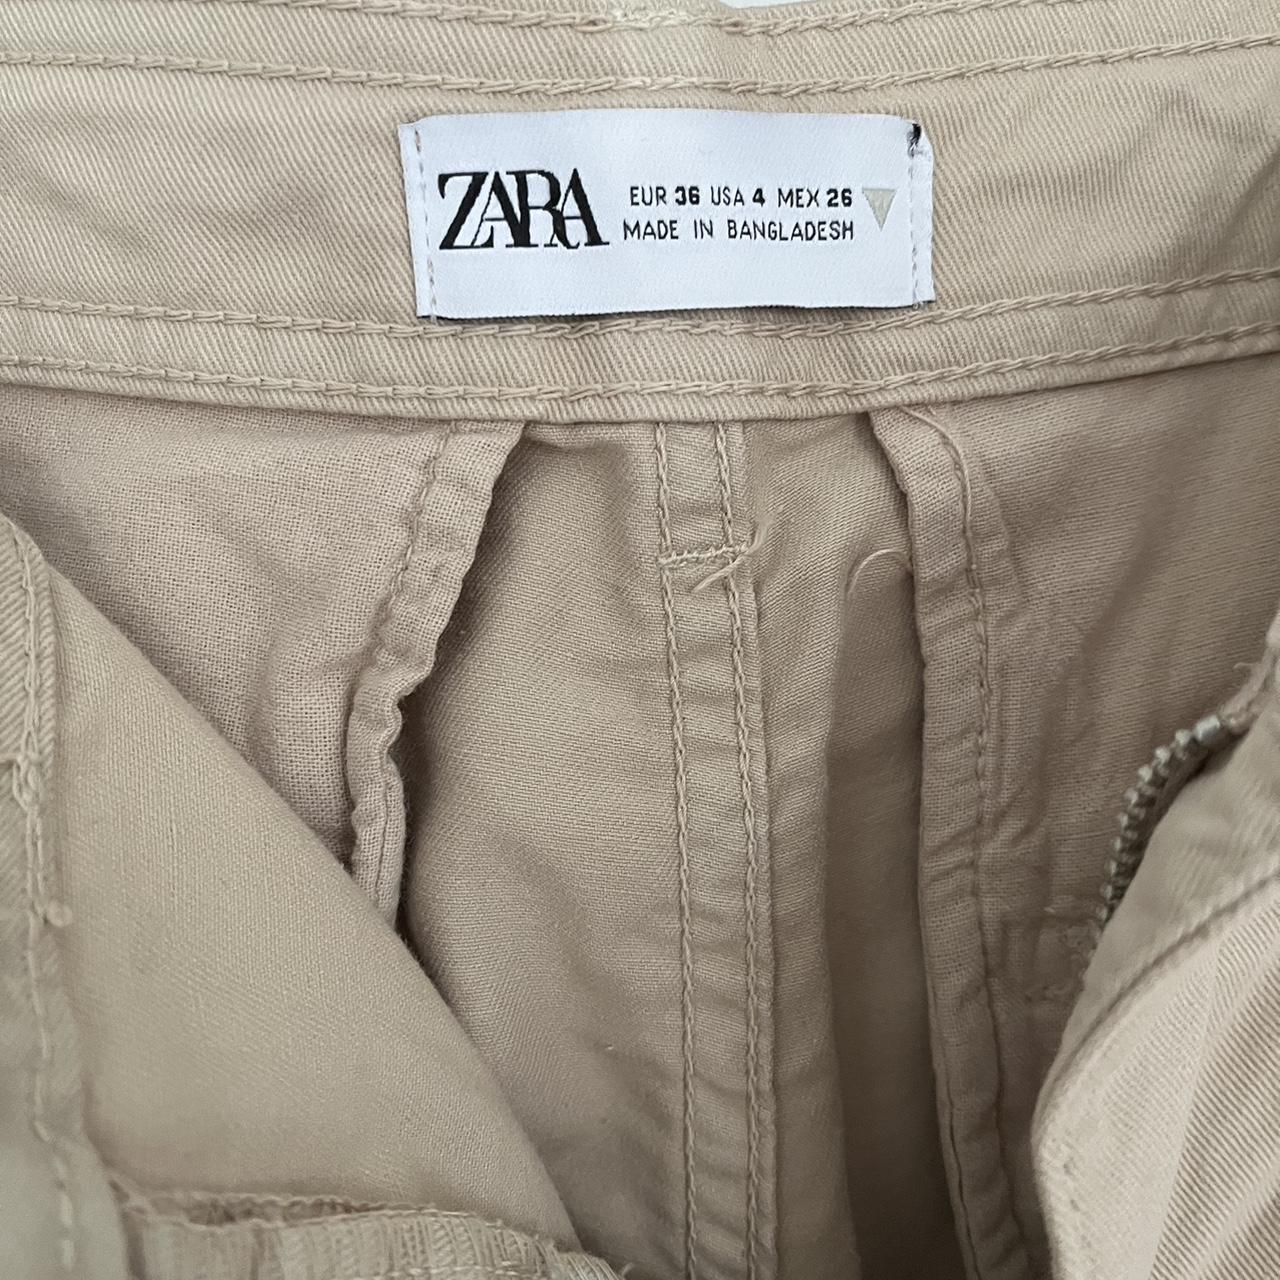 Zara beige Utility trousers / cargo / safari pants - Depop